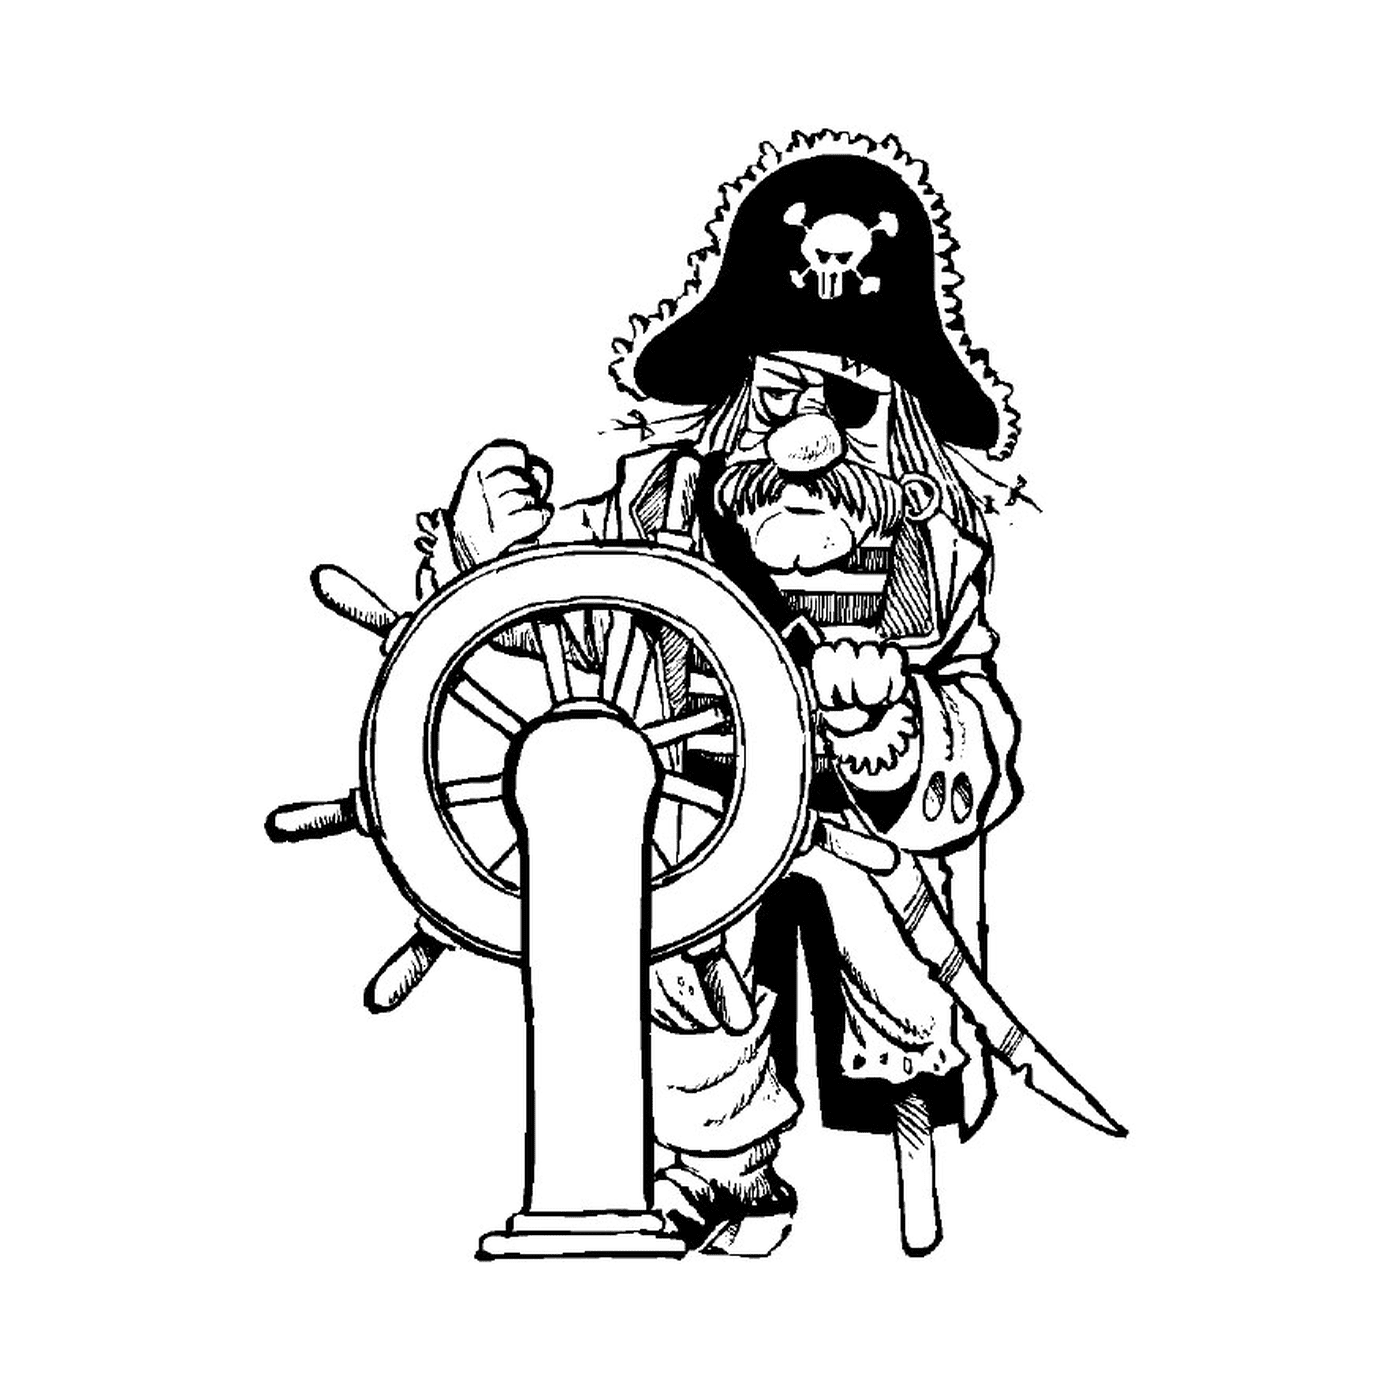  A pirate in the rudder 